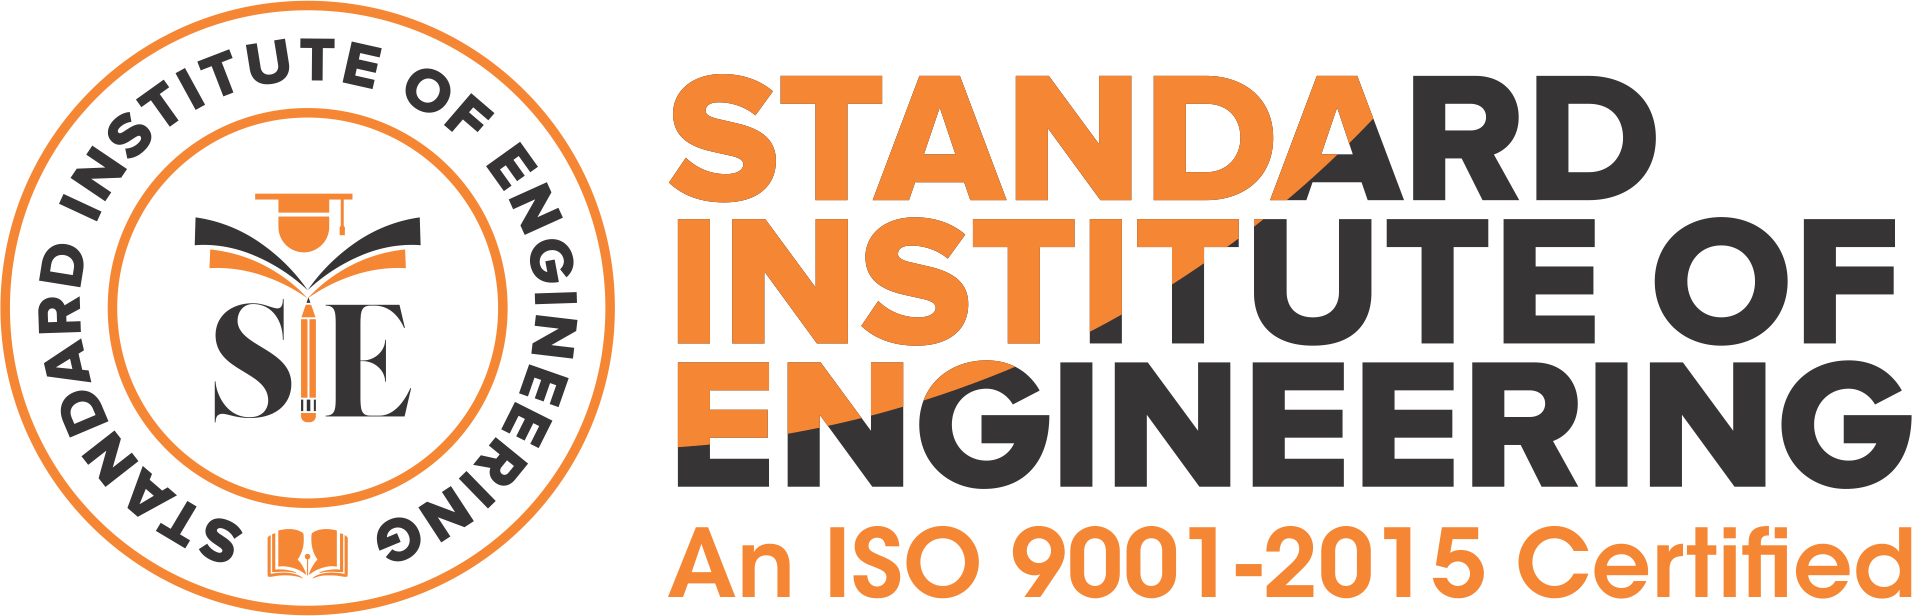 Standard Institute of Engineering, siehyd